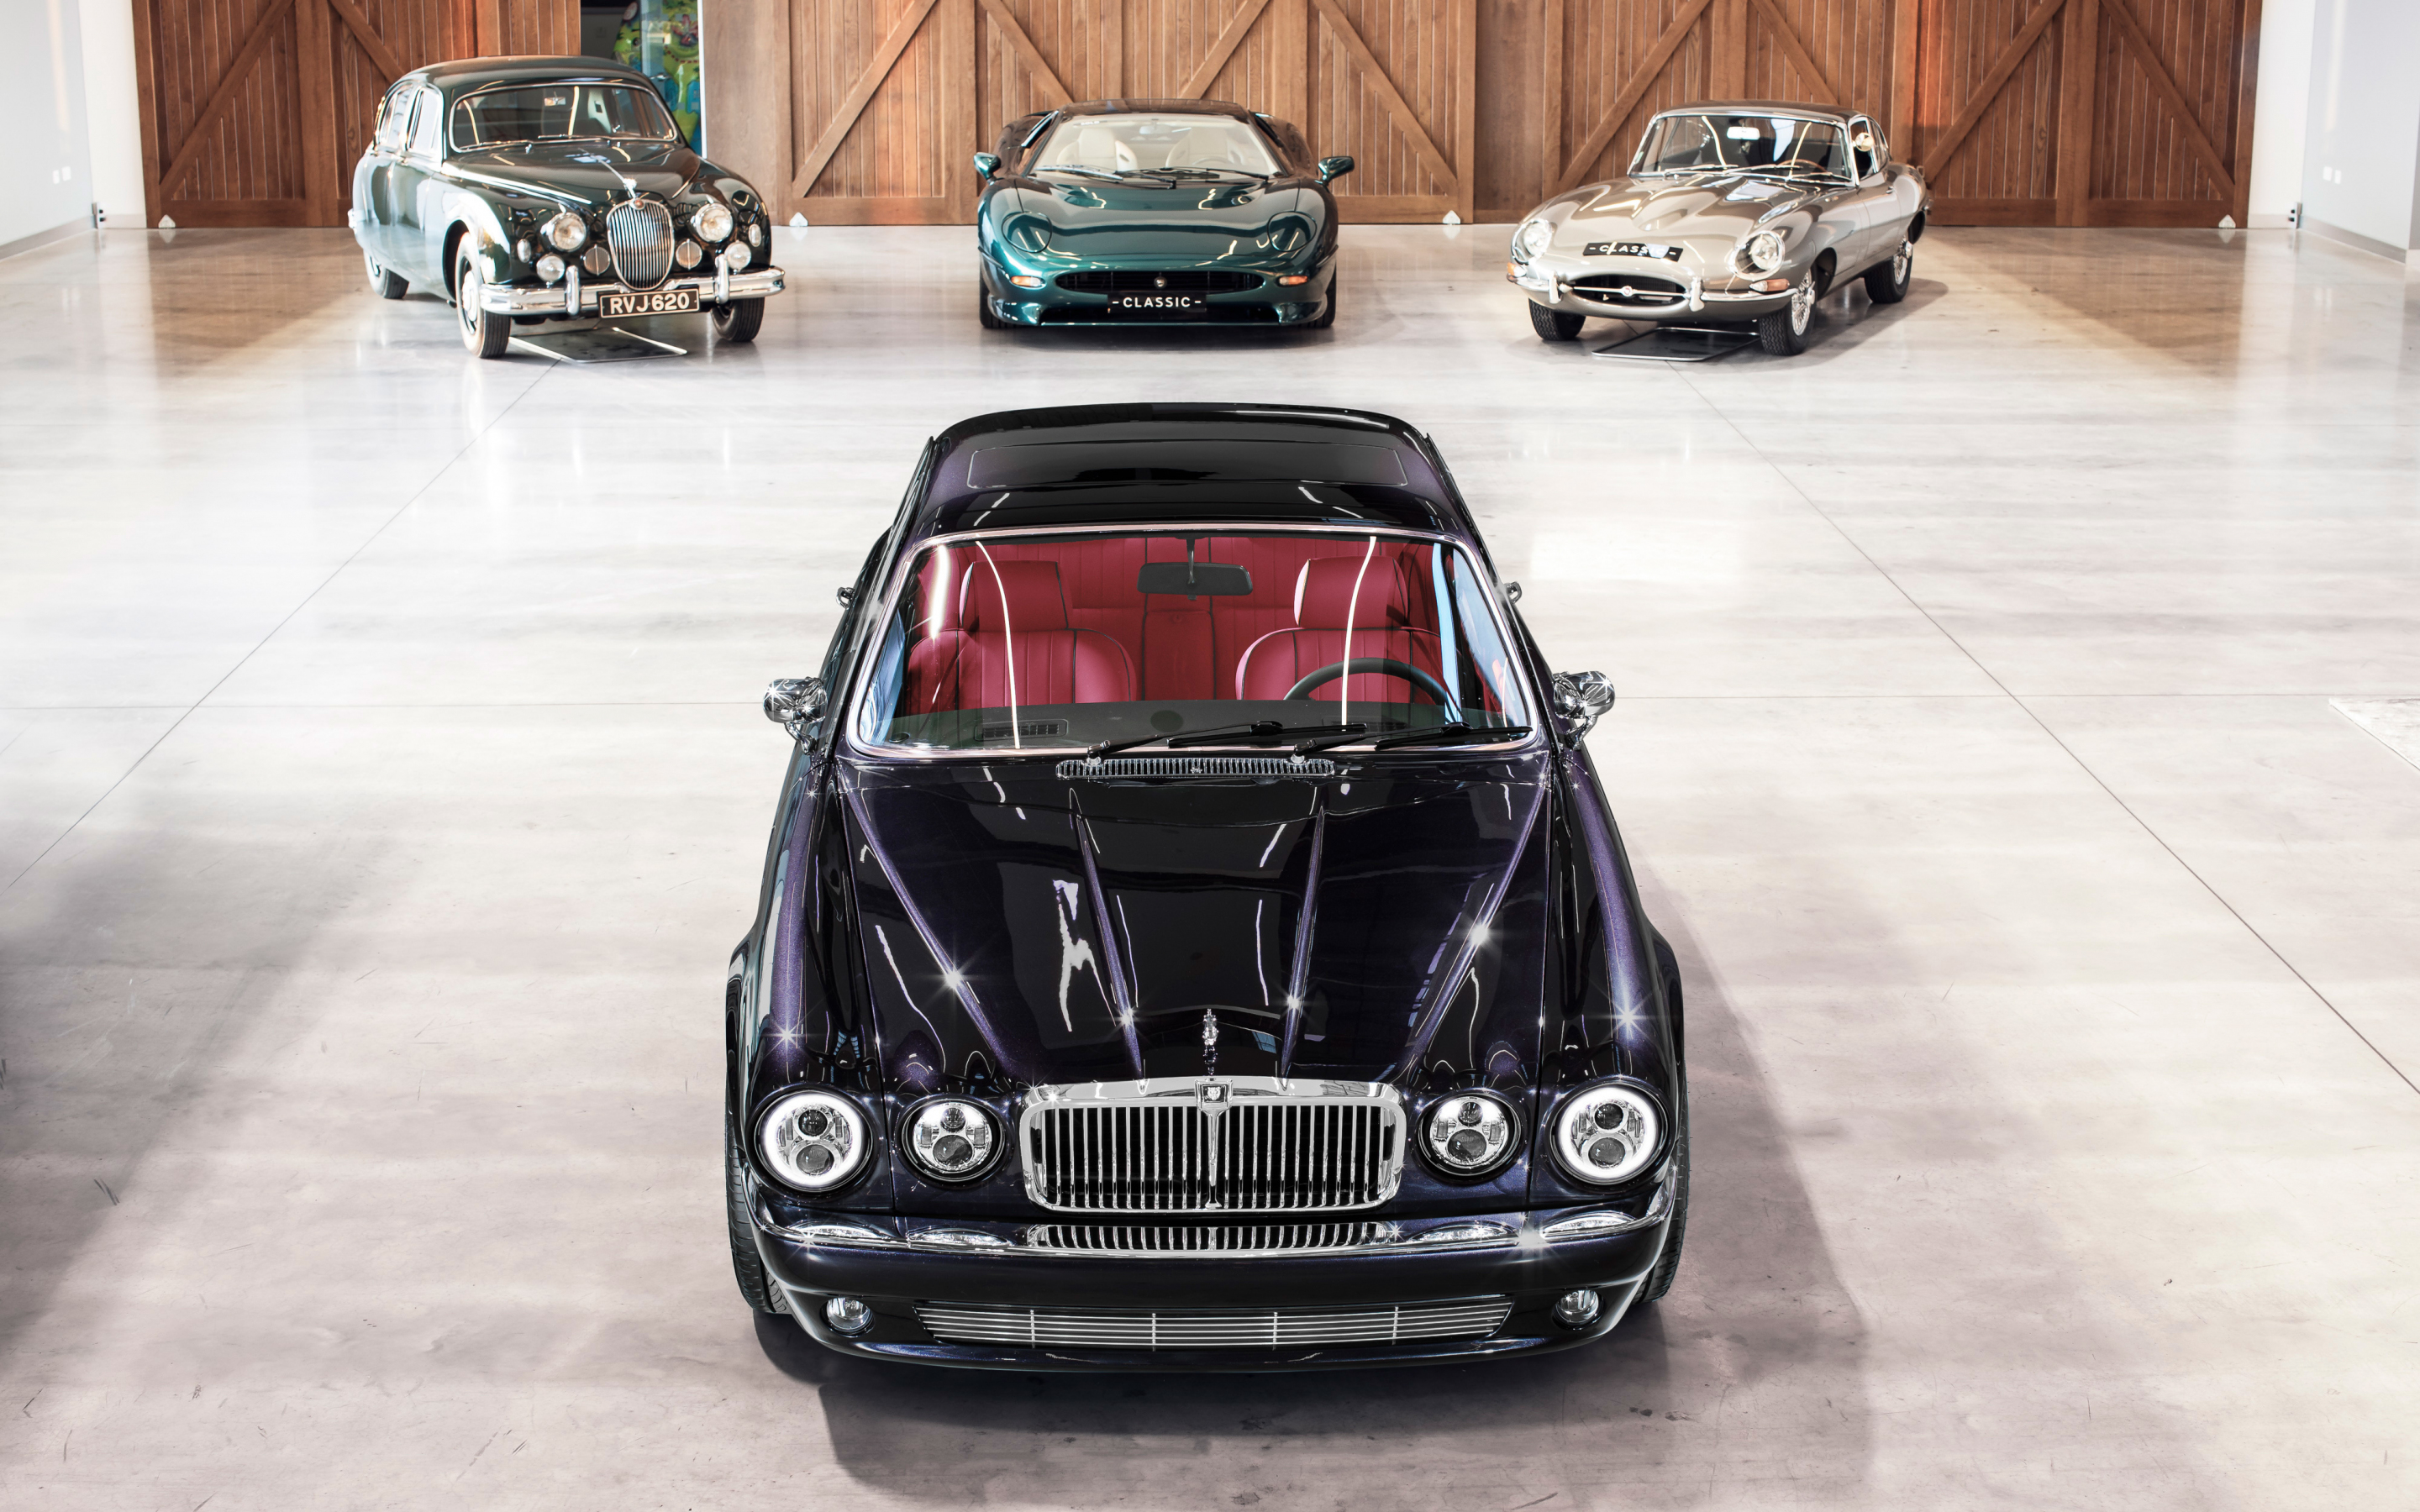 Jaguar XJ6 Classic, land rover, classic, 2880x1800 wallpaper